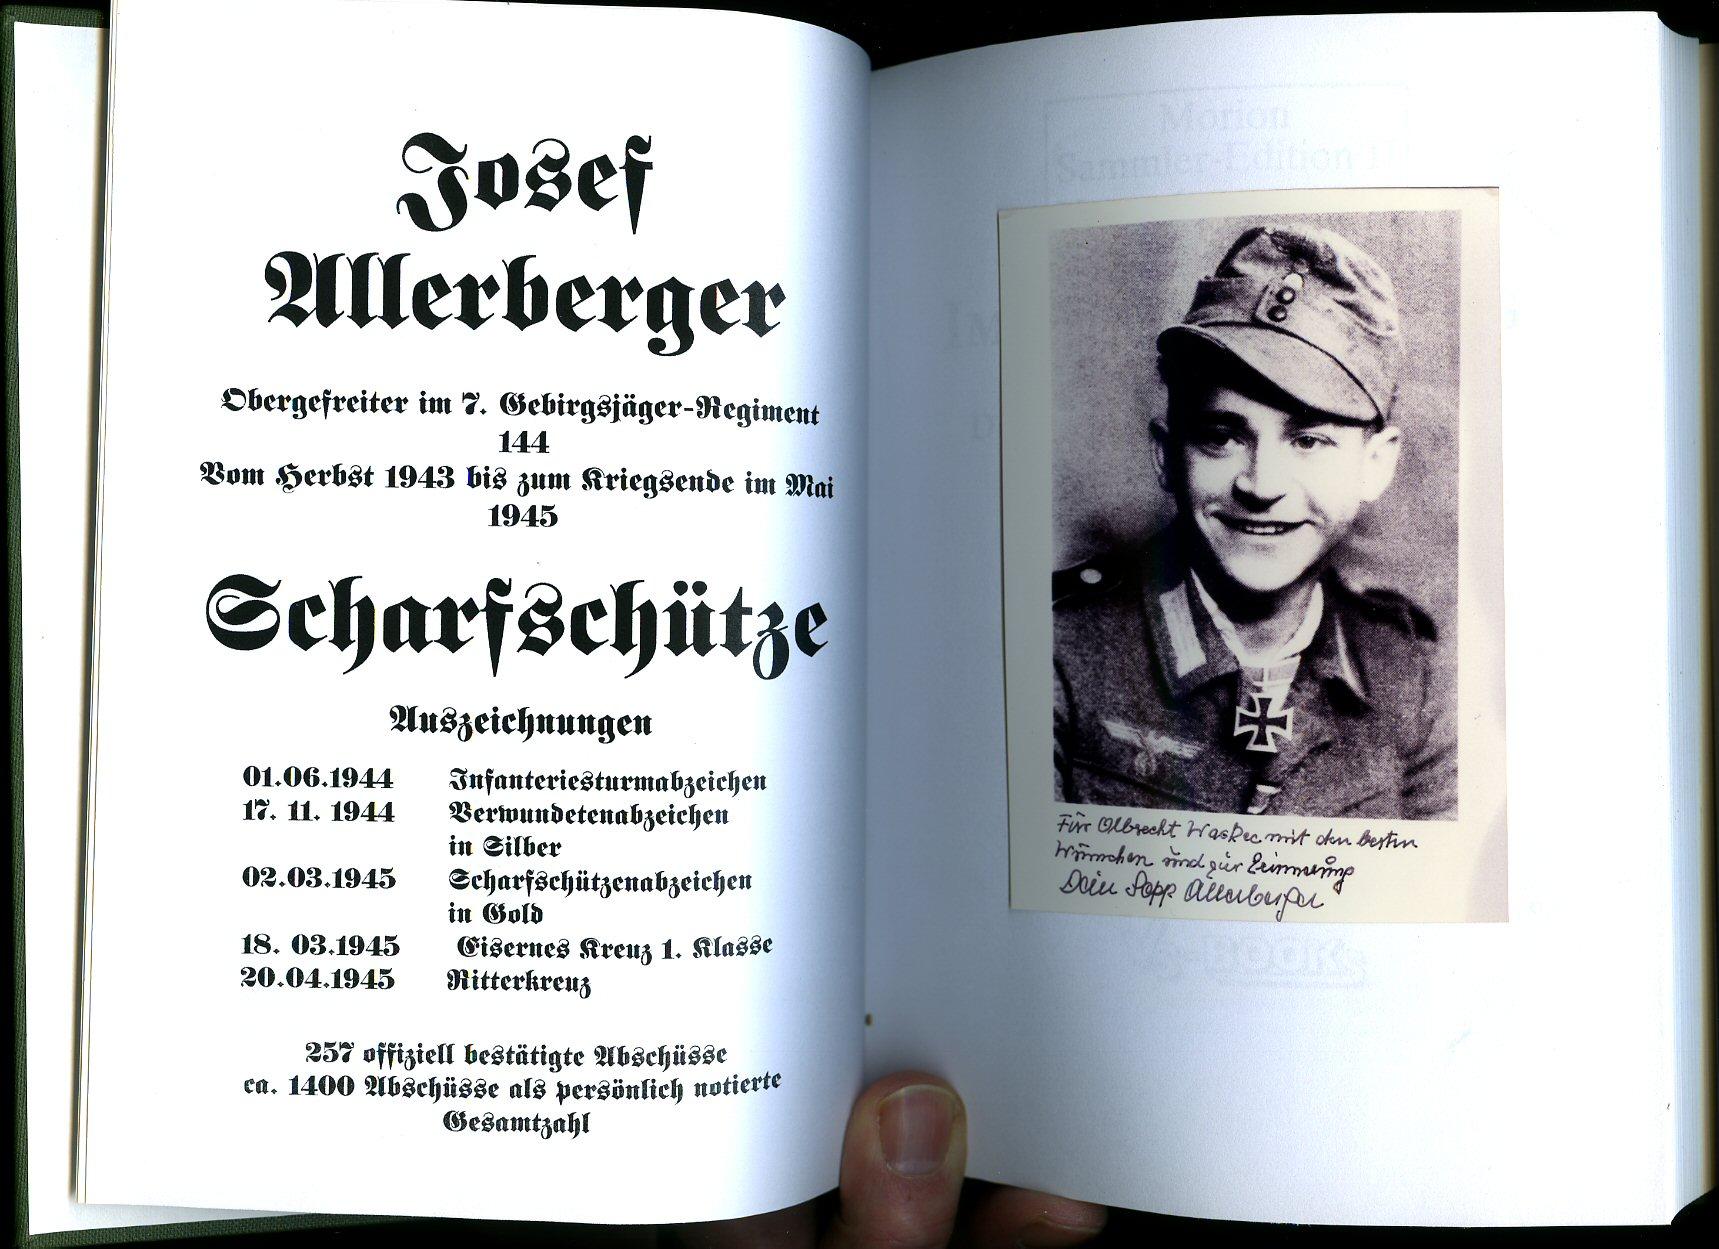 Der Wehrmachtsscharfschütze Sepp Allerberger Im Auge des Jägers eine biographische Studie 